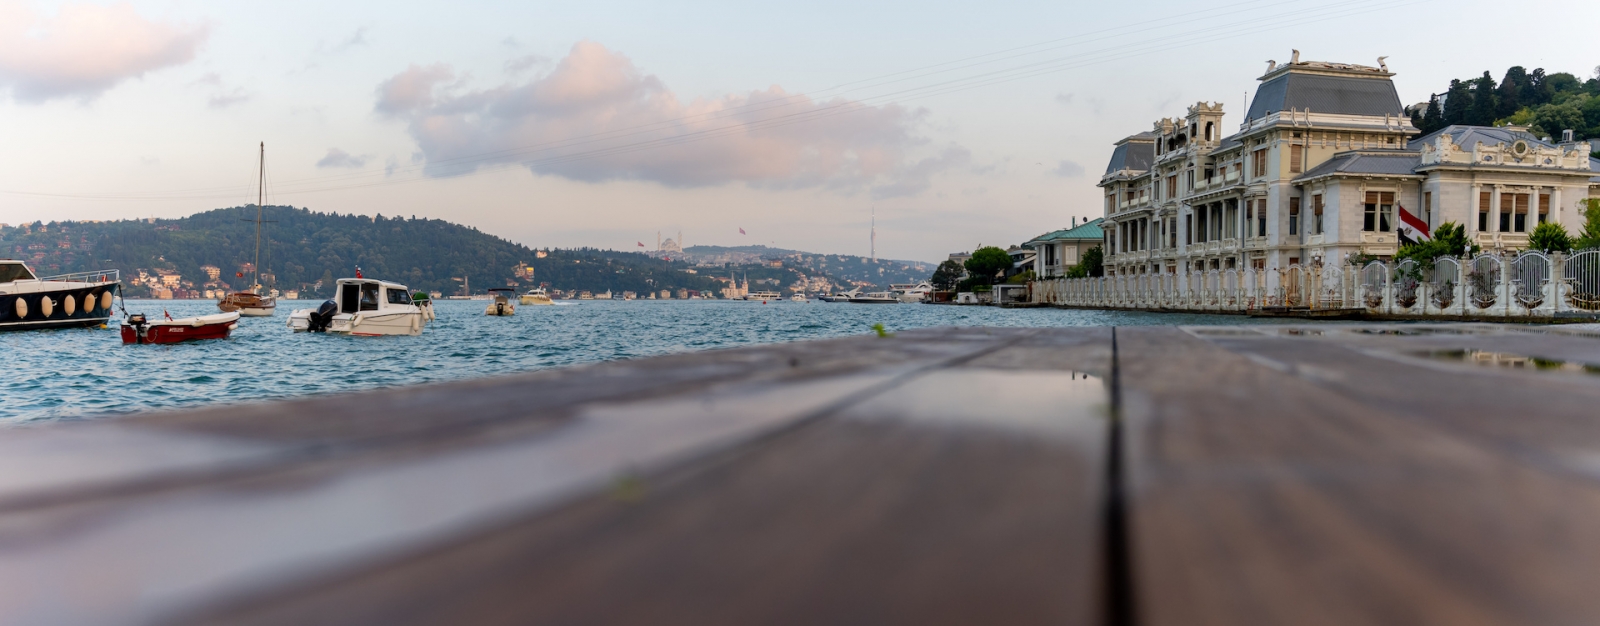 Blick vom Strand auf den Bosporus, Boote, Hofbank und historische Villen.  Bebek-Strand.  Besiktas Istanbul Türkei